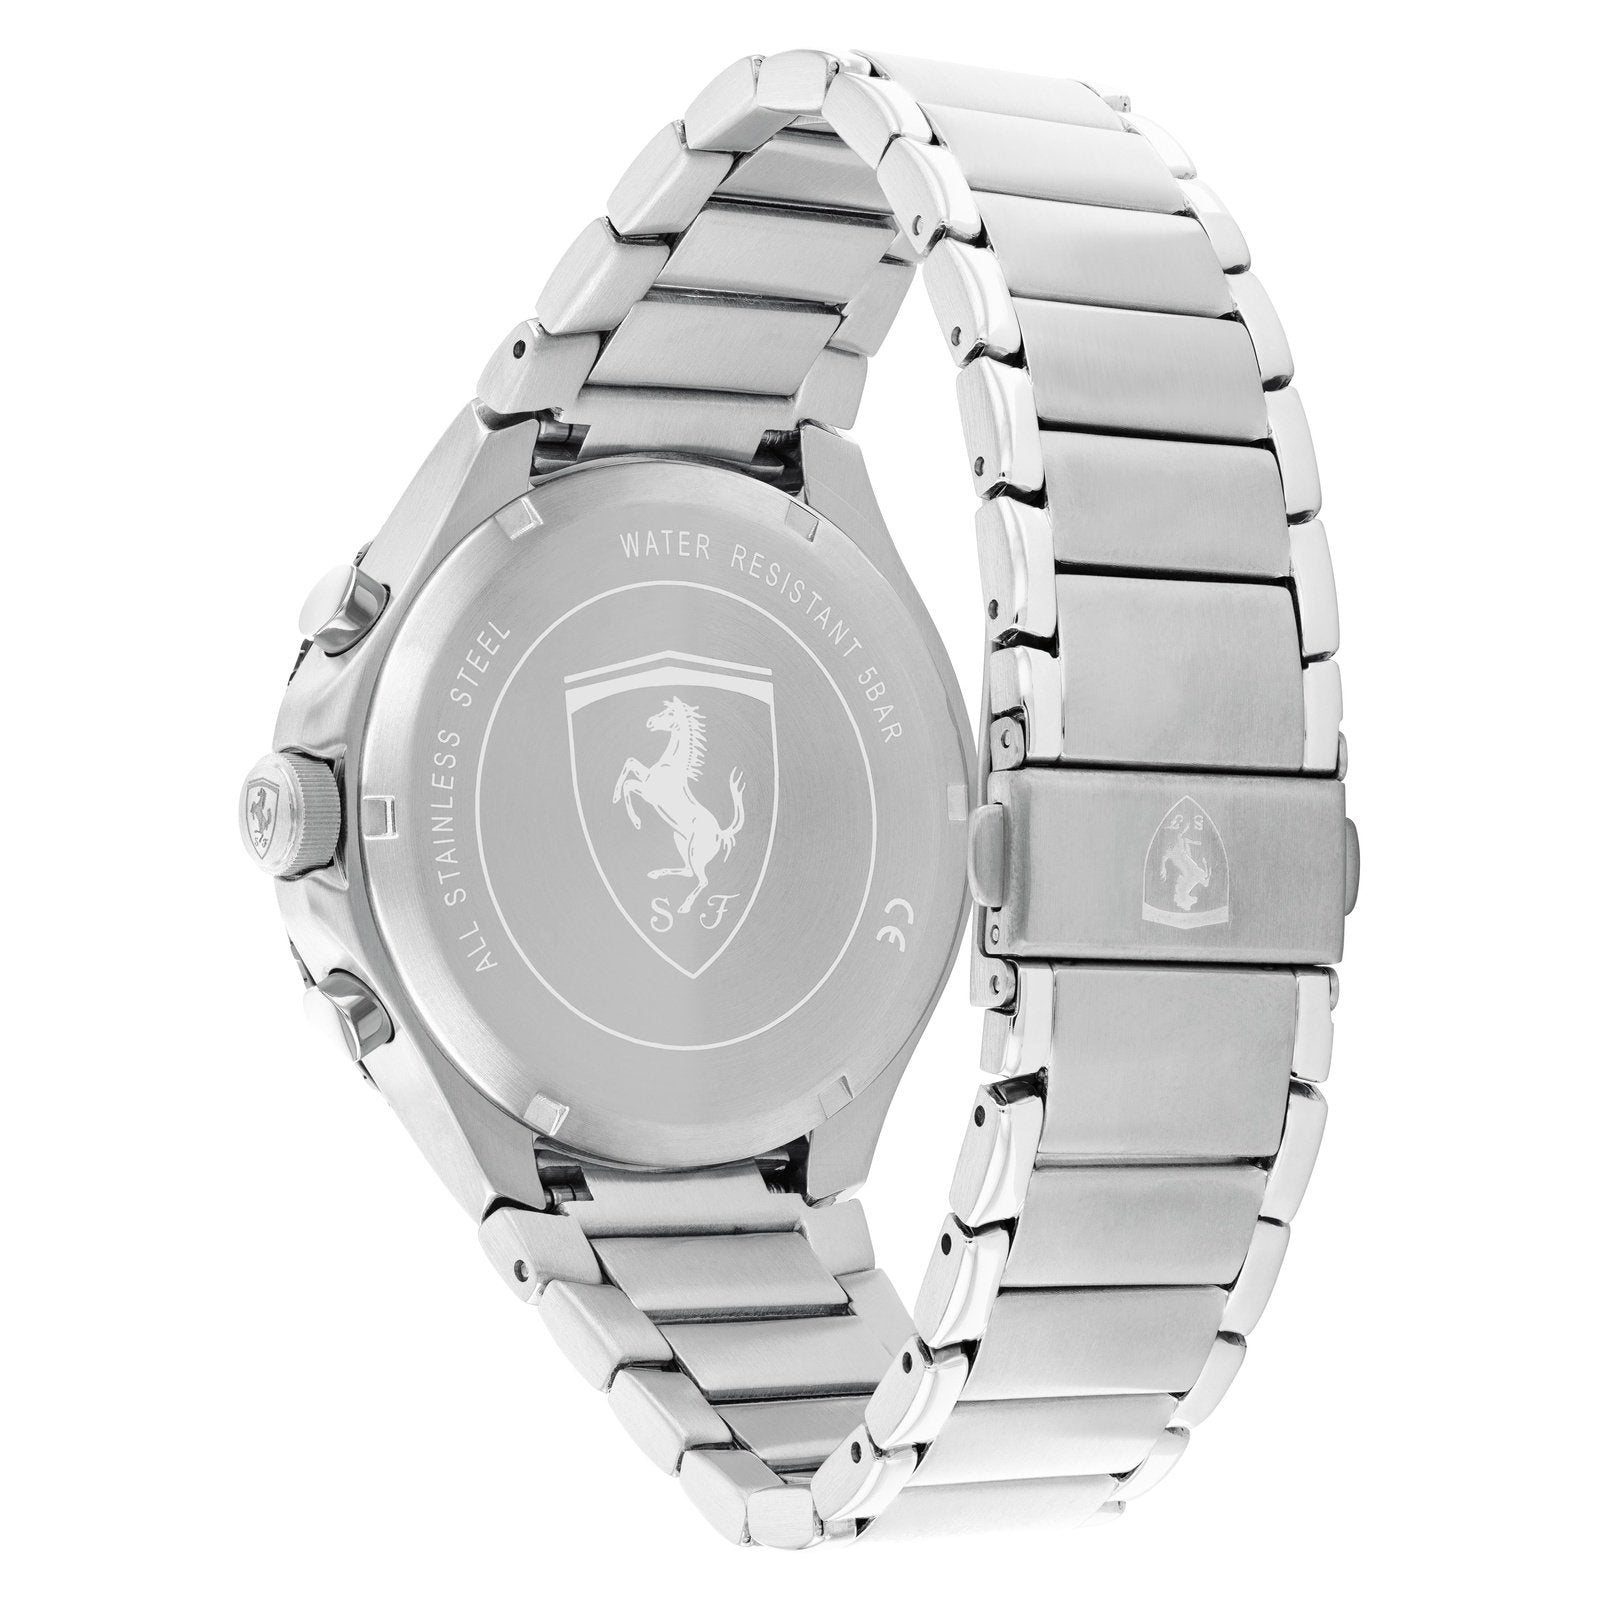 Men's Pista Watch 0830854 Scuderia Ferrari